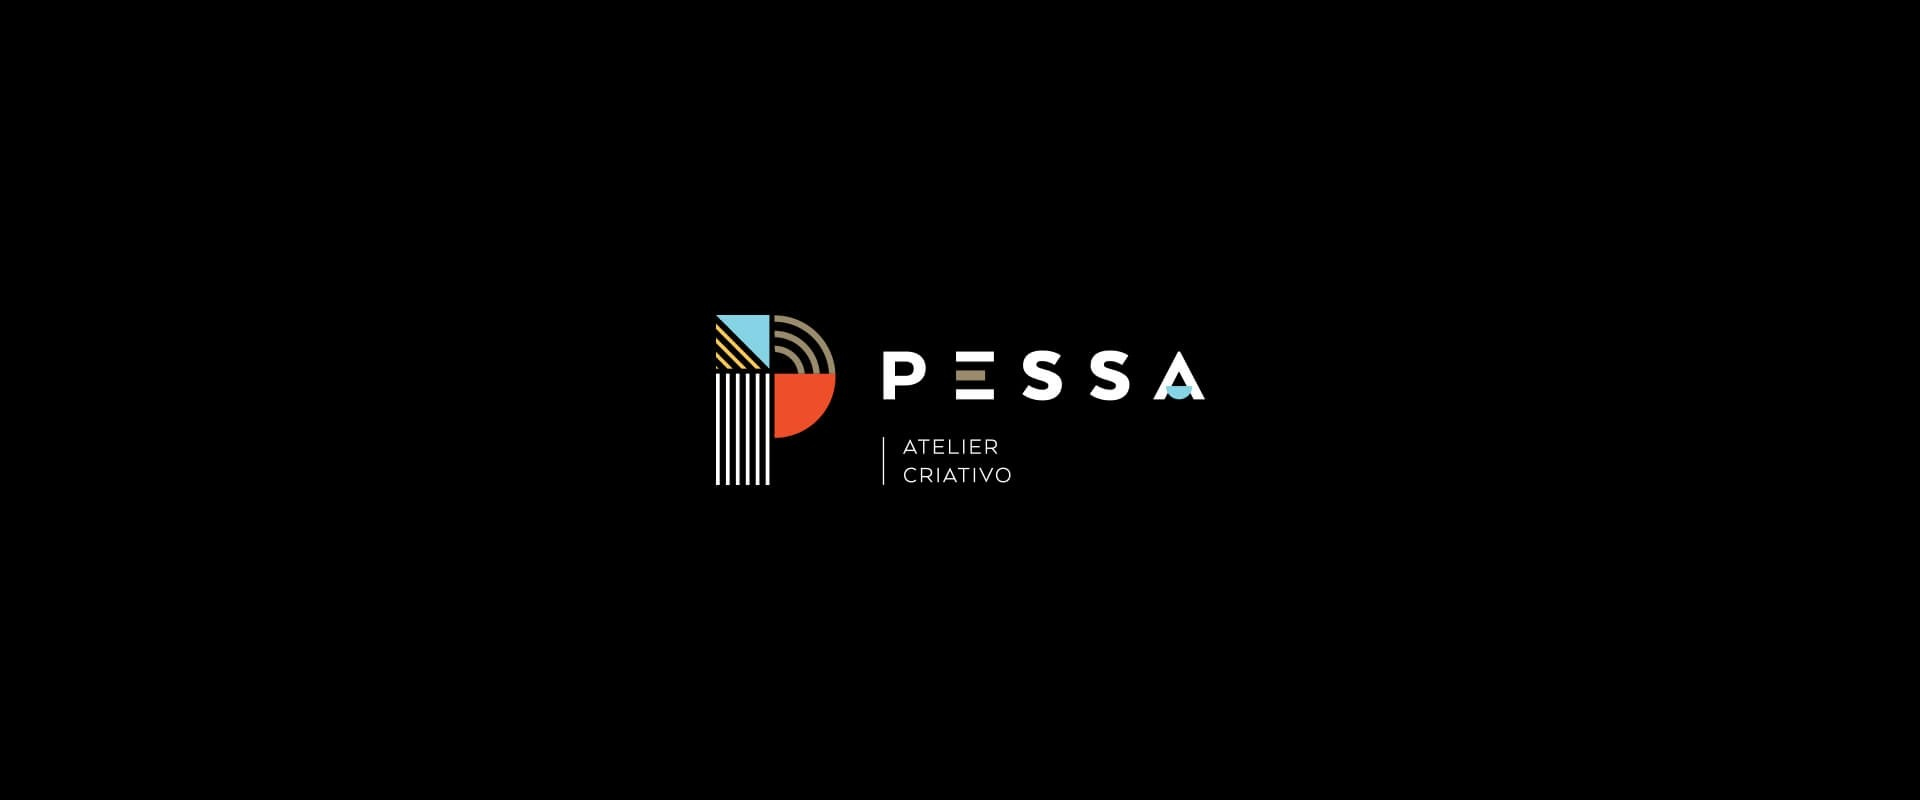 PESSA -fullscreen2 - LOBA.cx